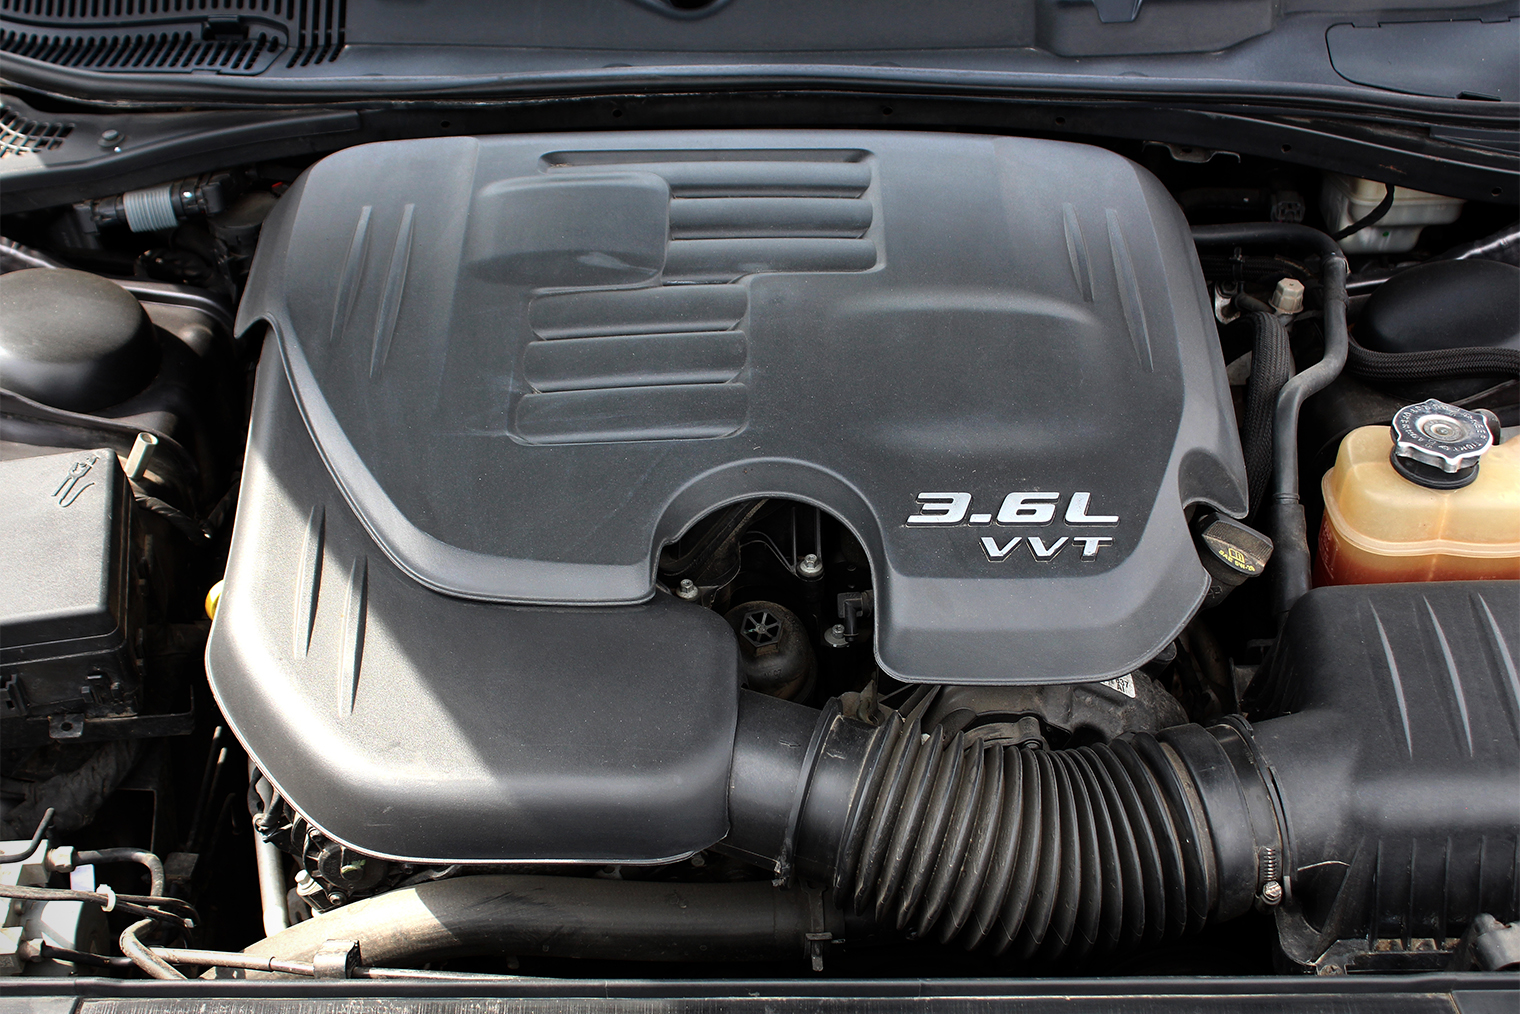 Базовый двигатель объемом 3,6 л кажется слабым только на фоне более мощных модификаций. Даже с ним заднеприводное купе разгоняется до 100 км/ч за 6,6 с, а полноприводное — за 7,2 с. Источник: Best Auto Photo / Shutterstock / FOTODOM